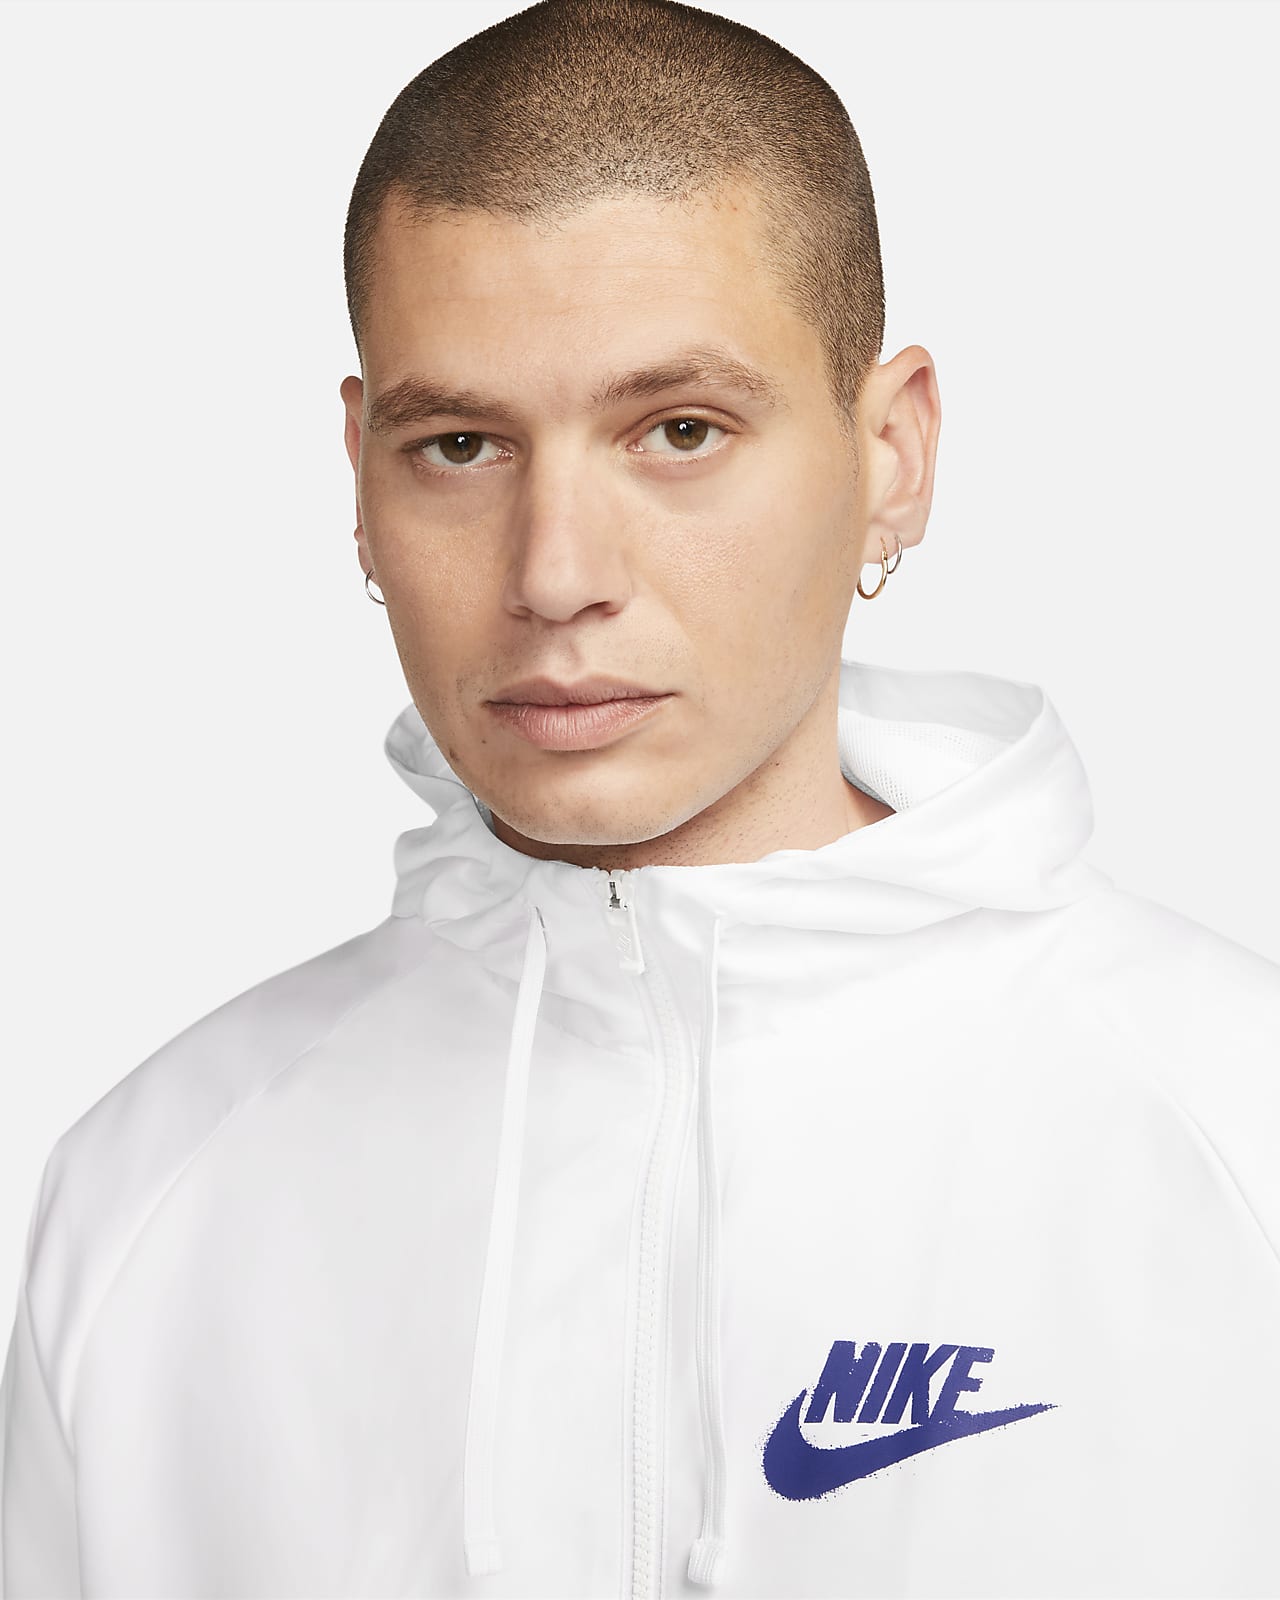 Nike Large And XL Jacket